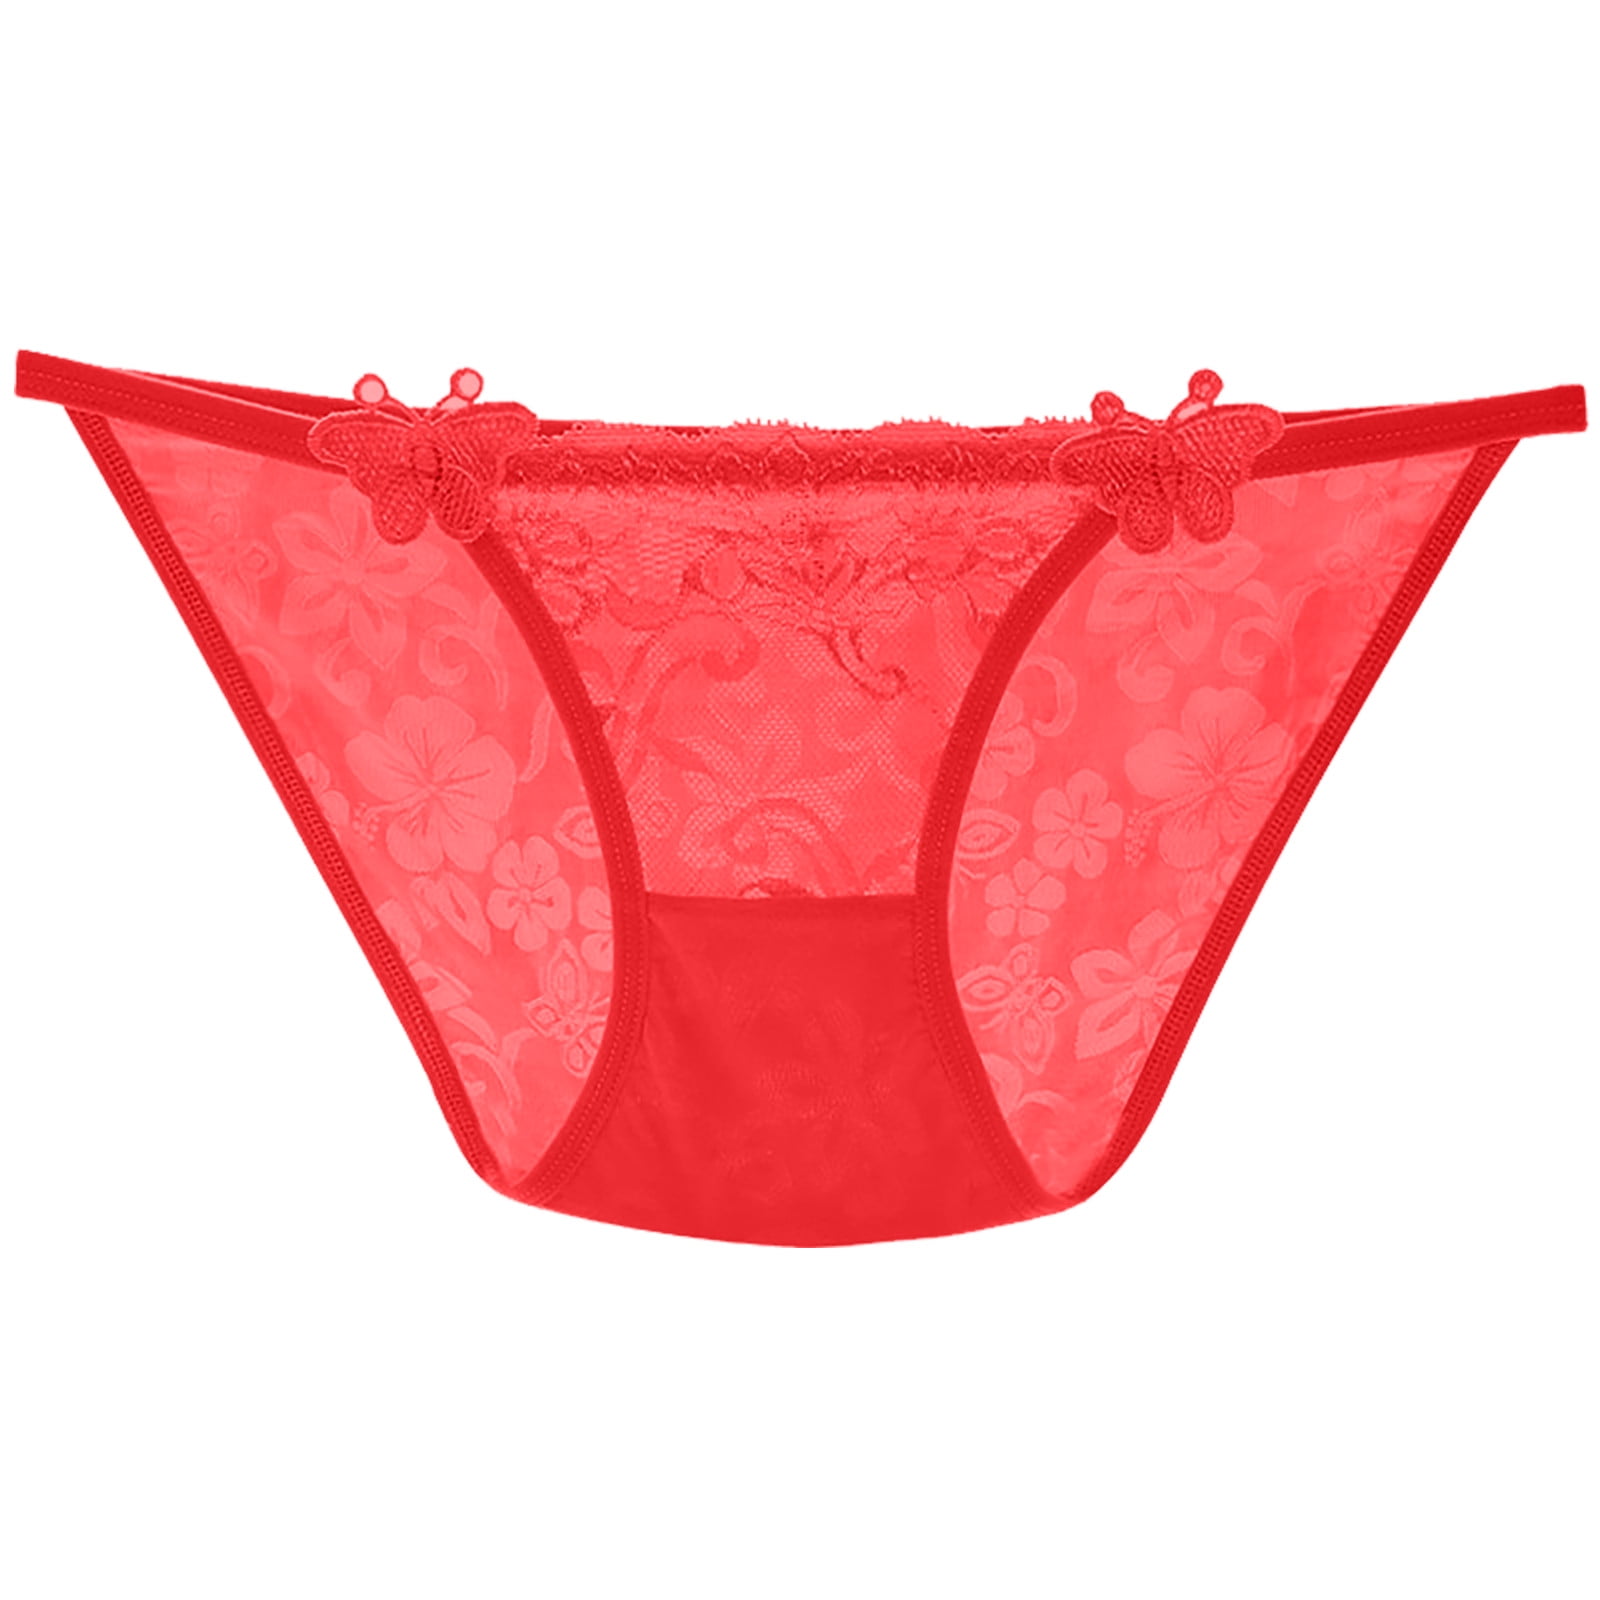 GWAABD Sweat Wicking Underwear Women Transparent Lace Ultra Thin Mesh Mid  Waist Large Hot Underwear